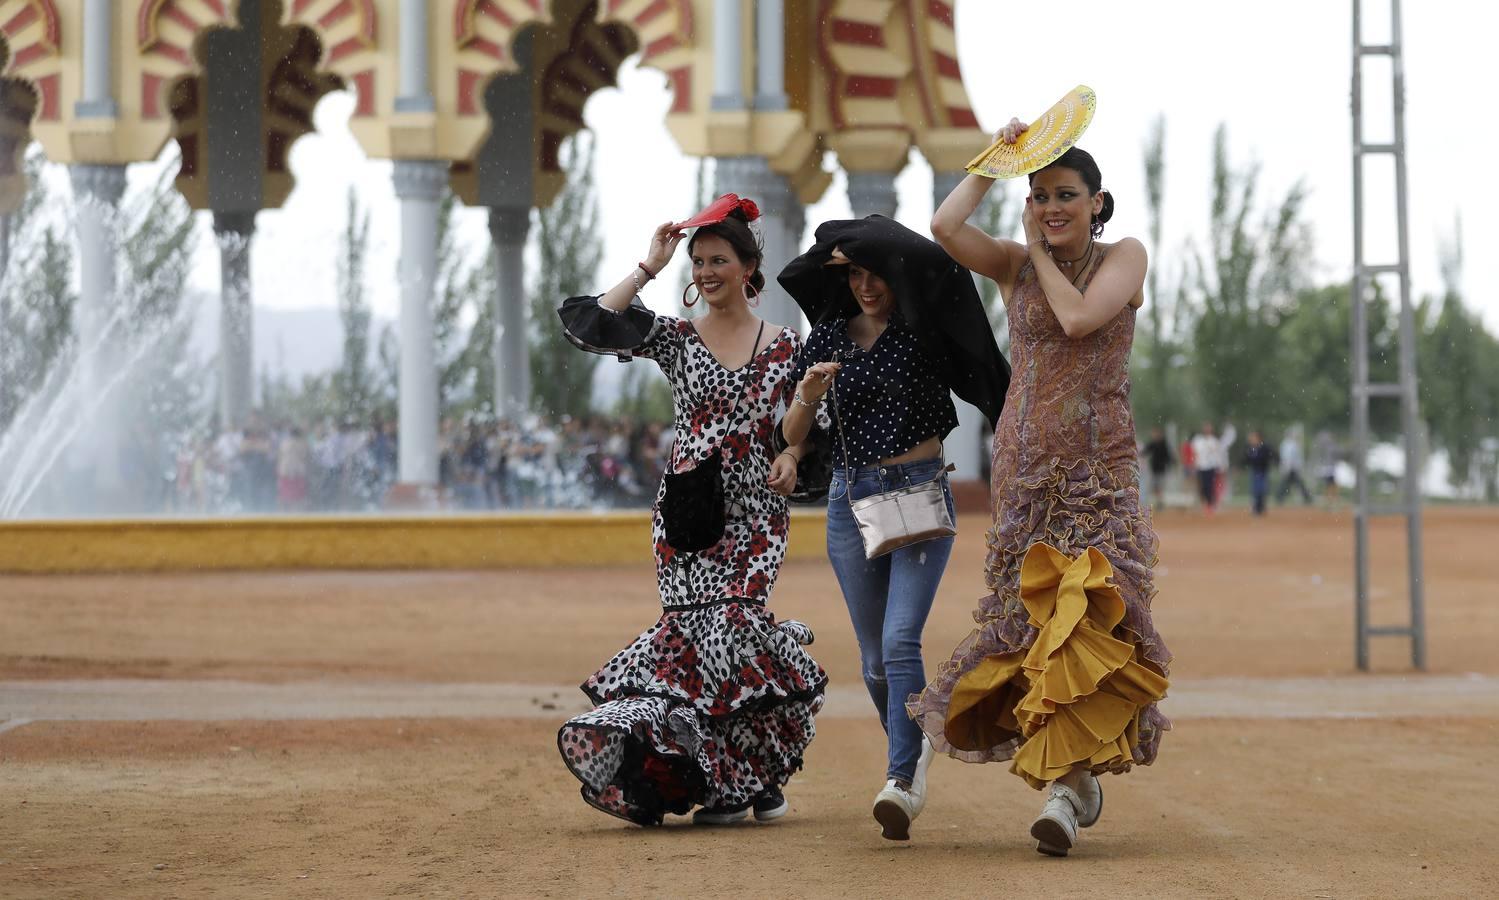 El lunes de la Feria de Córdoba, en imágenes